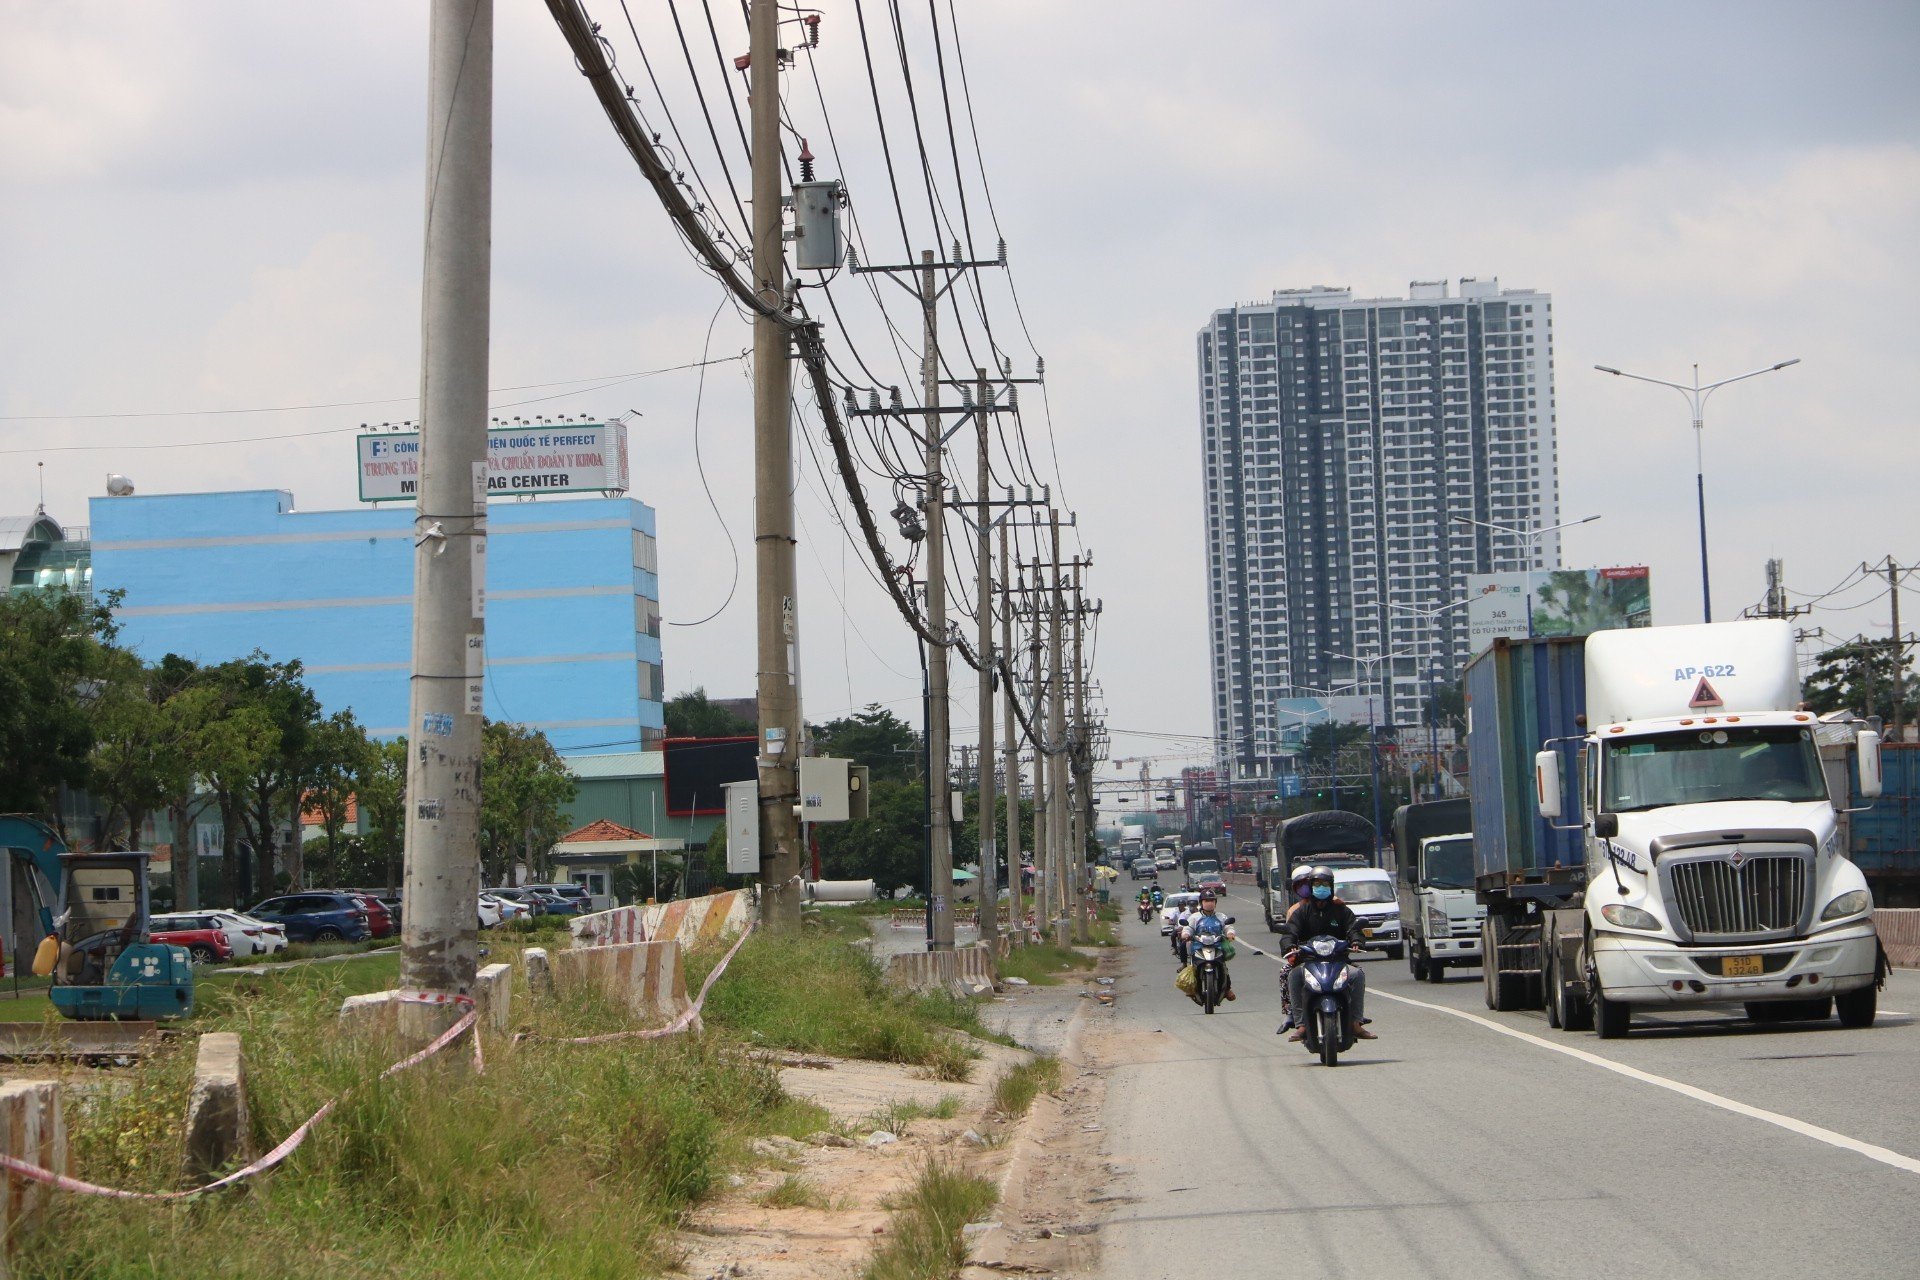  UBND tỉnh Bình Dương cho biết, ngoài chưa bàn giao hết mặt bằng, việc vướng lưới điện cũng ảnh hưởng tiến độ. Hiện, UBND TP Thuận An đang hoàn thiện các thủ tục xin điều chỉnh báo cáo nghiên cứu khả thi dự án bồi thường để thực hiện dự án hạng mục bồi thường di dời lưới điện khoảng 95 tỉ đồng.